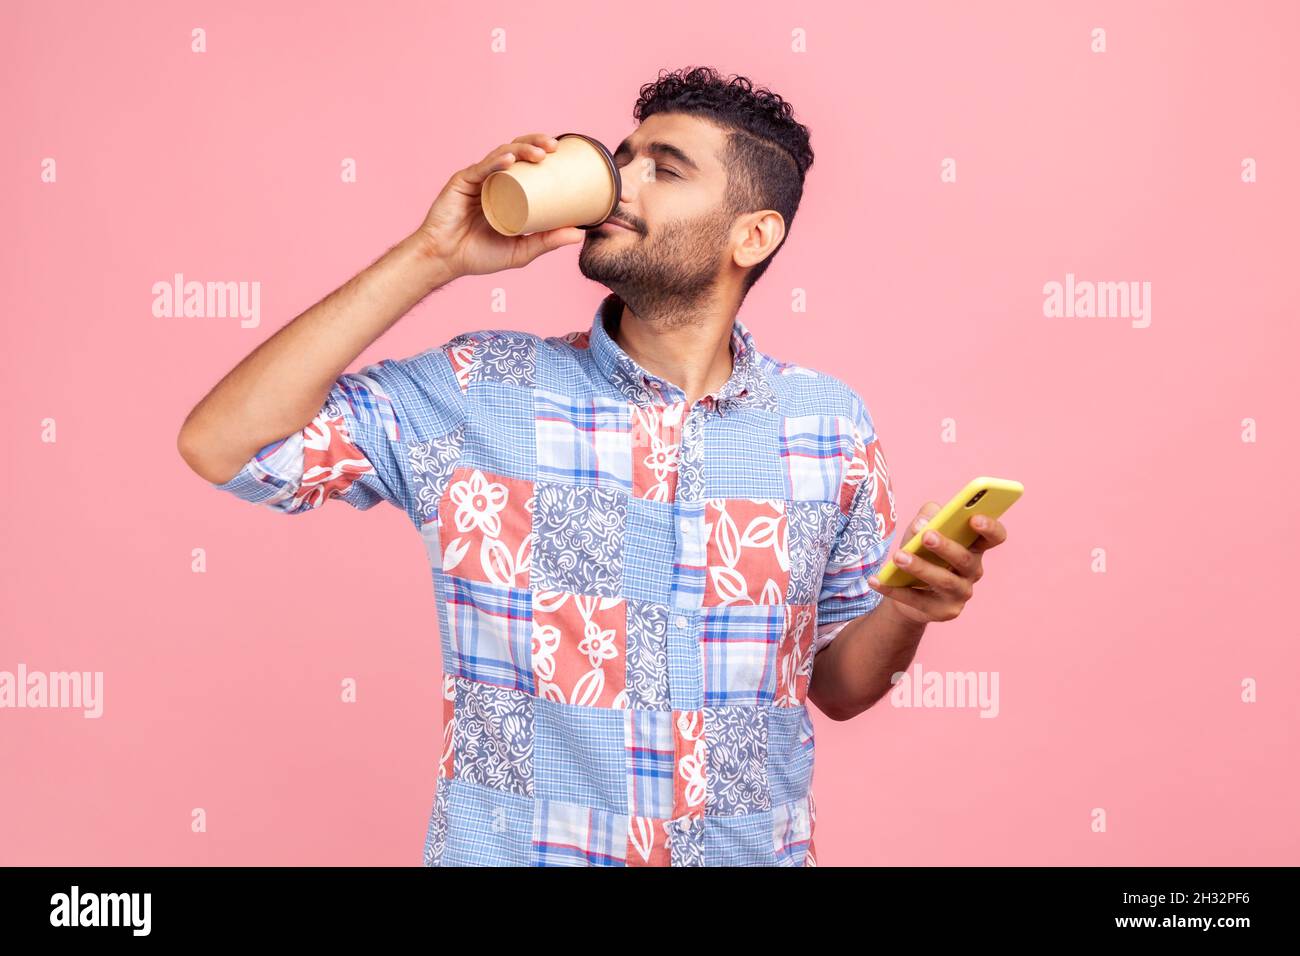 Retrato de un joven adulto atractivo en camisa de estilo informal de pie y sosteniendo una taza y un teléfono desechables, bebiendo y disfrutando de una bebida caliente. Estudio en interior grabado aislado sobre fondo rosa. Foto de stock